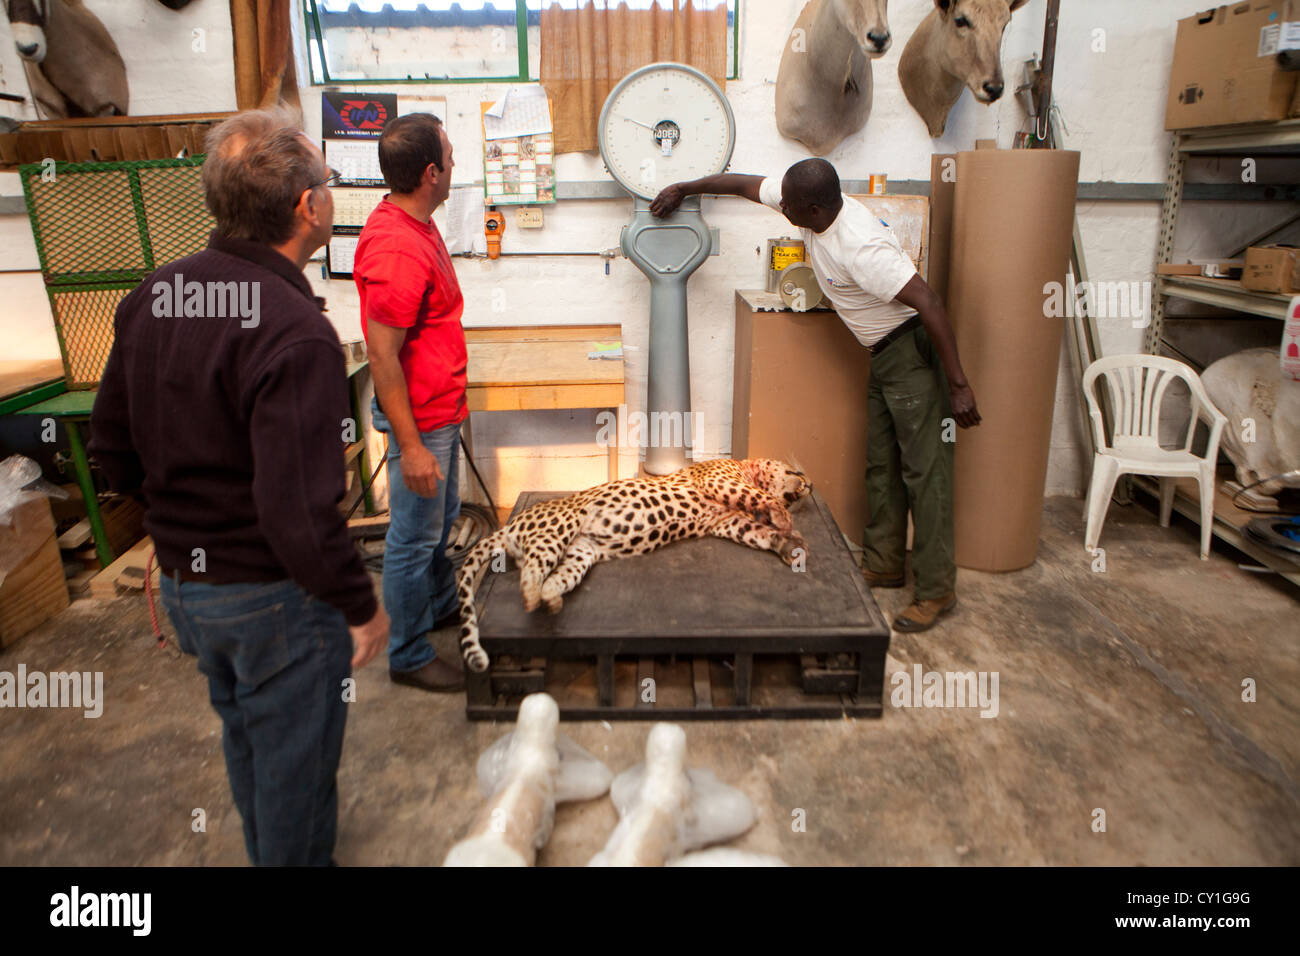 La taxidermie. Les chasseurs de l'analyse des États-Unis et l'Allemagne et le farcir de la faune comme un trophée dans un atelier de taxidermie en Namibie. Banque D'Images